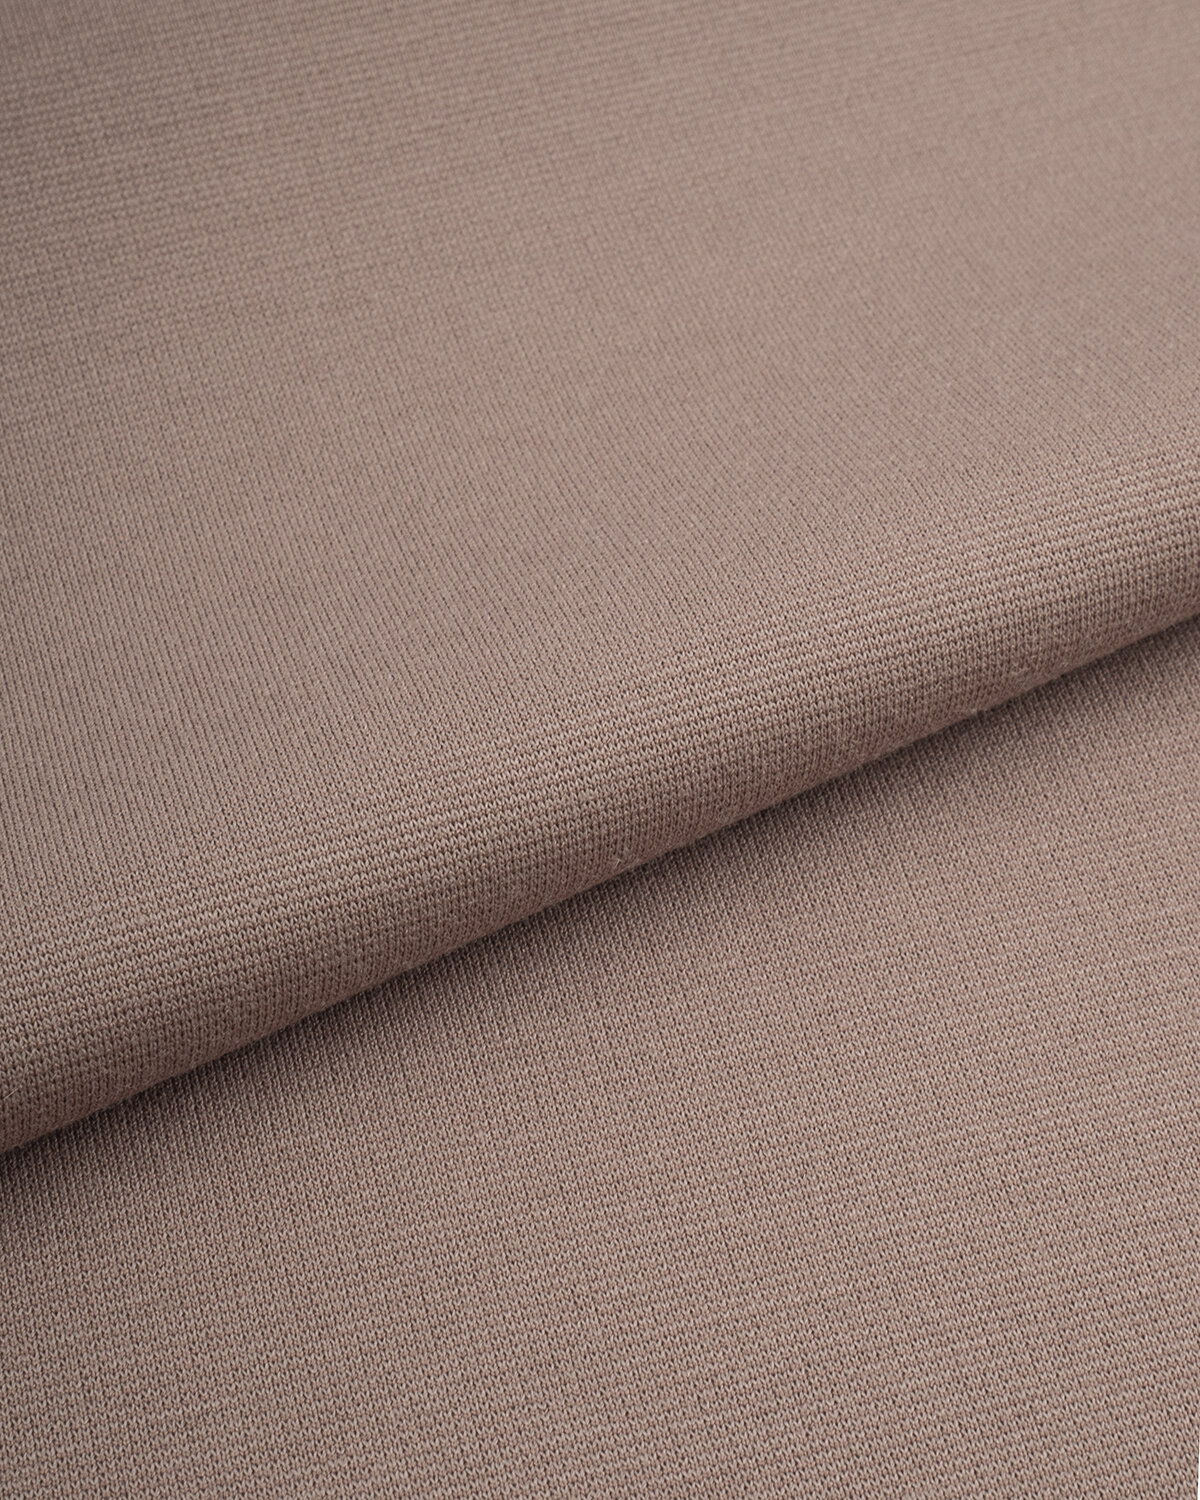 Ткань для шитья и рукоделия Джерси Полирома 1 м * 150 см розовый 015